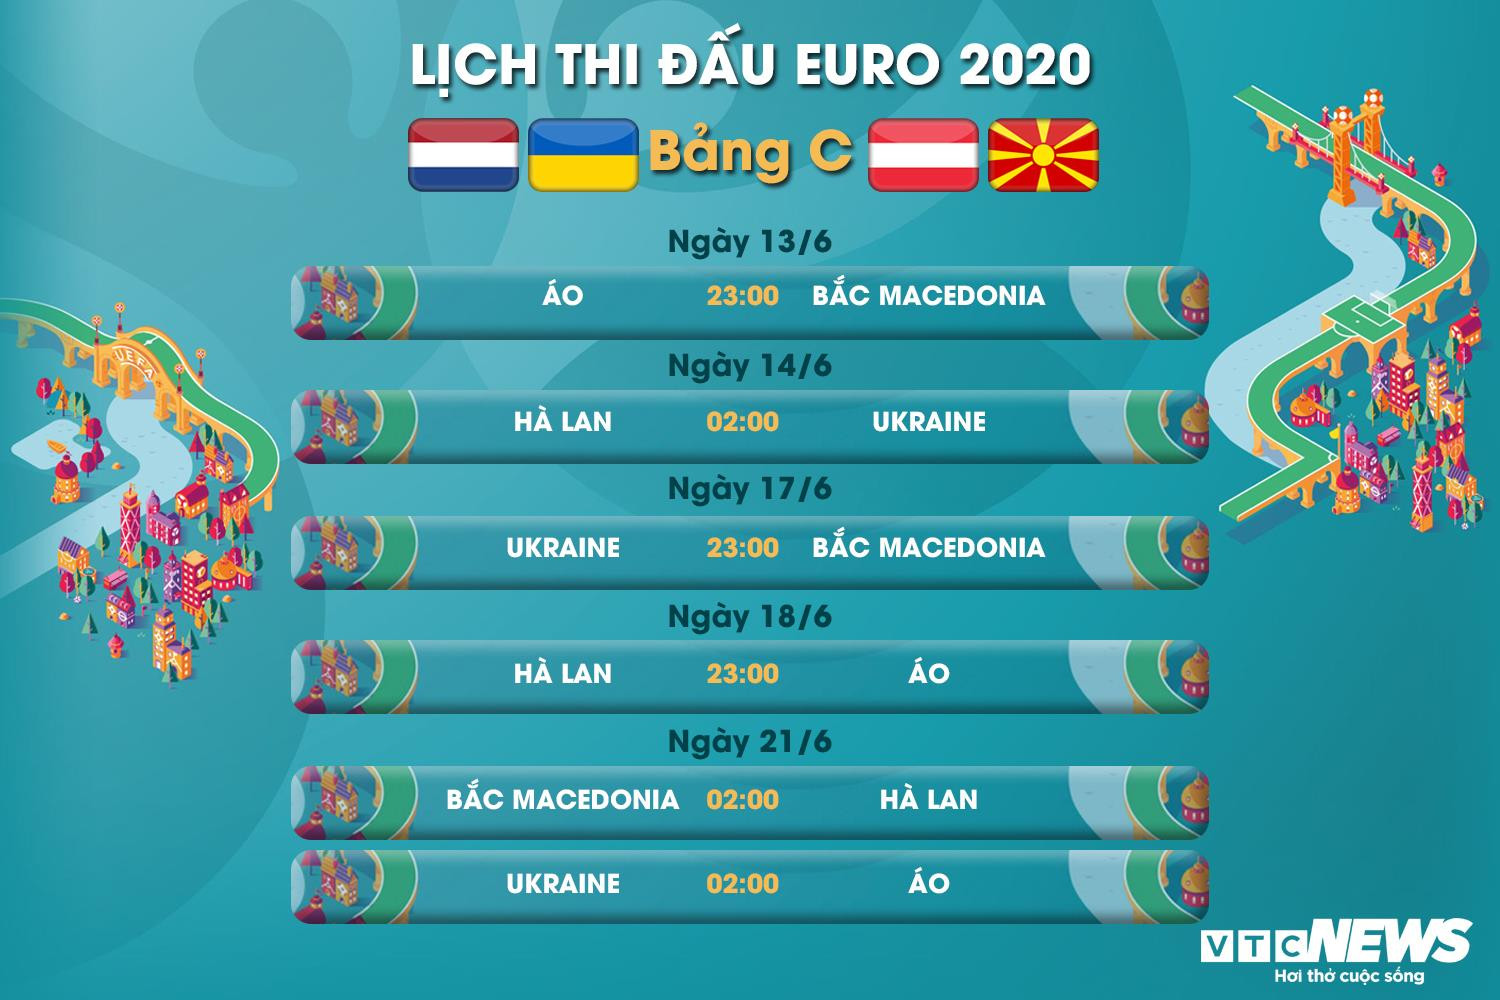 Lịch thi đấu EURO 2020 bảng C - 1